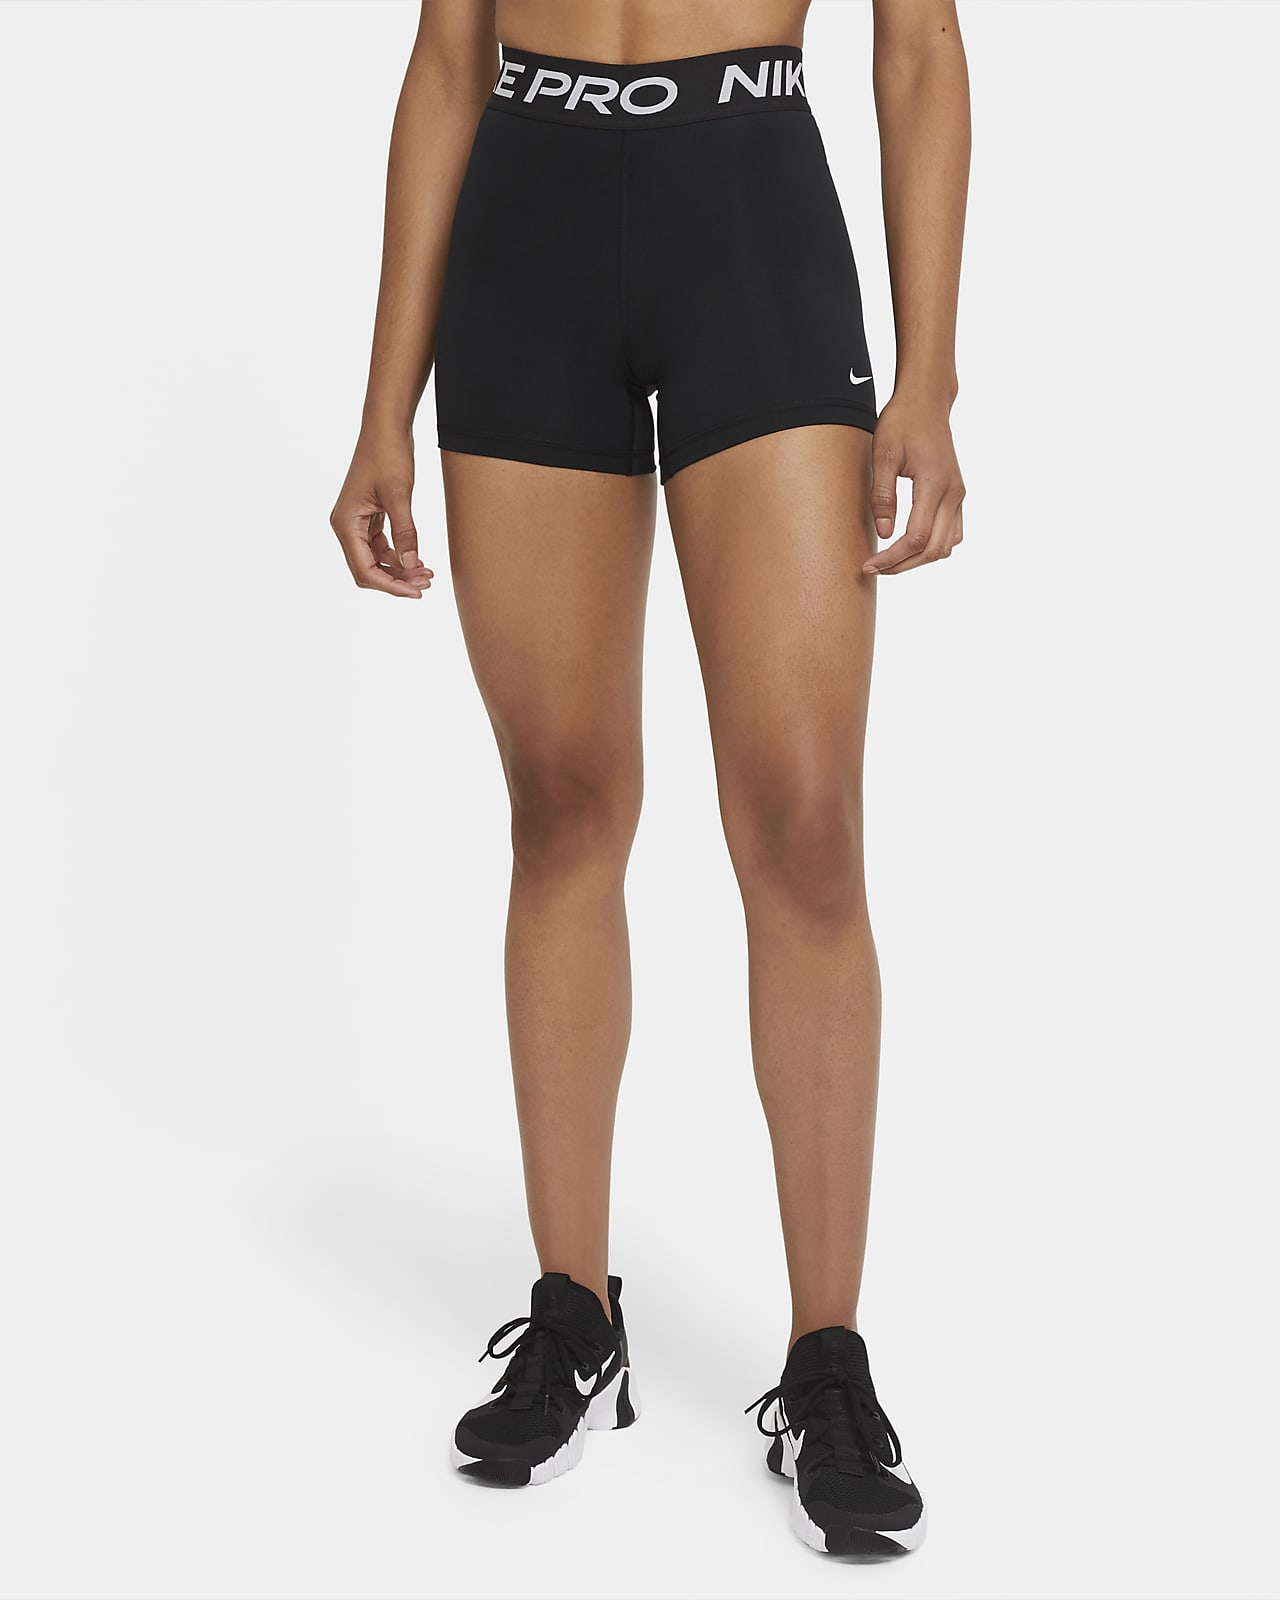 Huh Politiek Definitie Nike Pro 365 Women's 13cm (approx.) Shorts. Nike IN